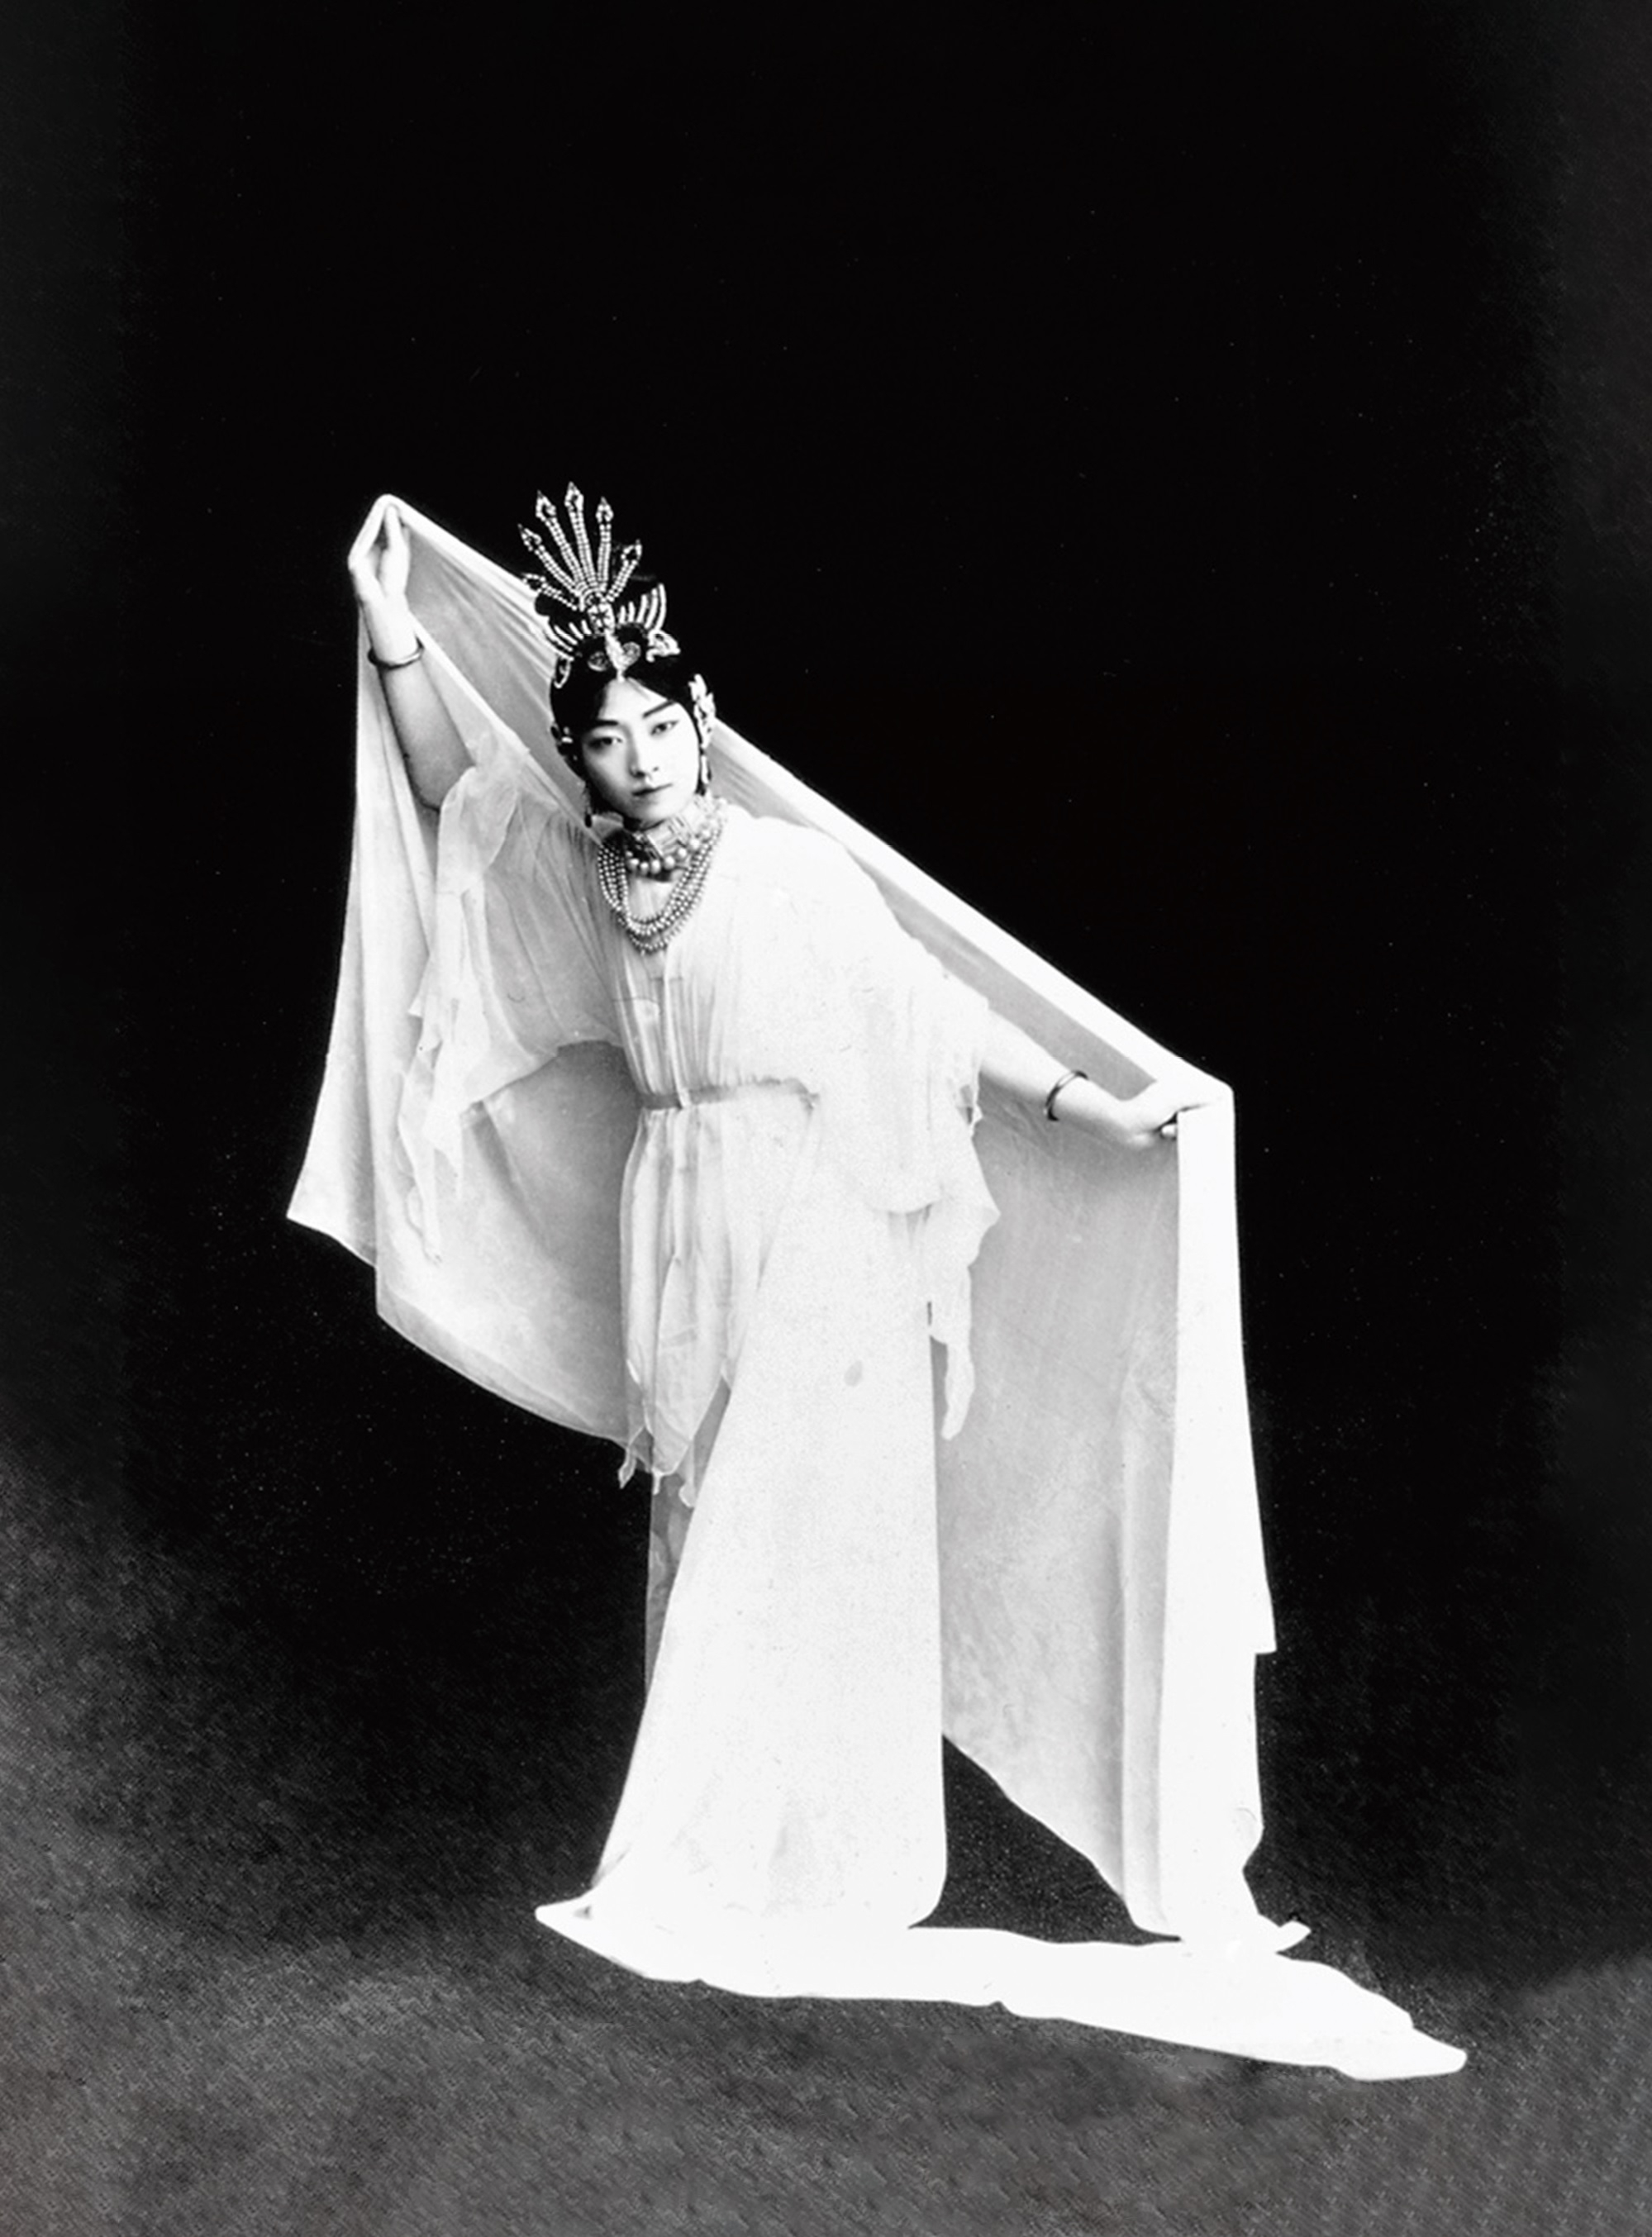 ◎圖三：民國　梅蘭芳　《太真外傳》　1926 年飾演楊貴妃照片 取自莊鑄九等編，《梅蘭芳》（上海：私人印刷，1926），頁23